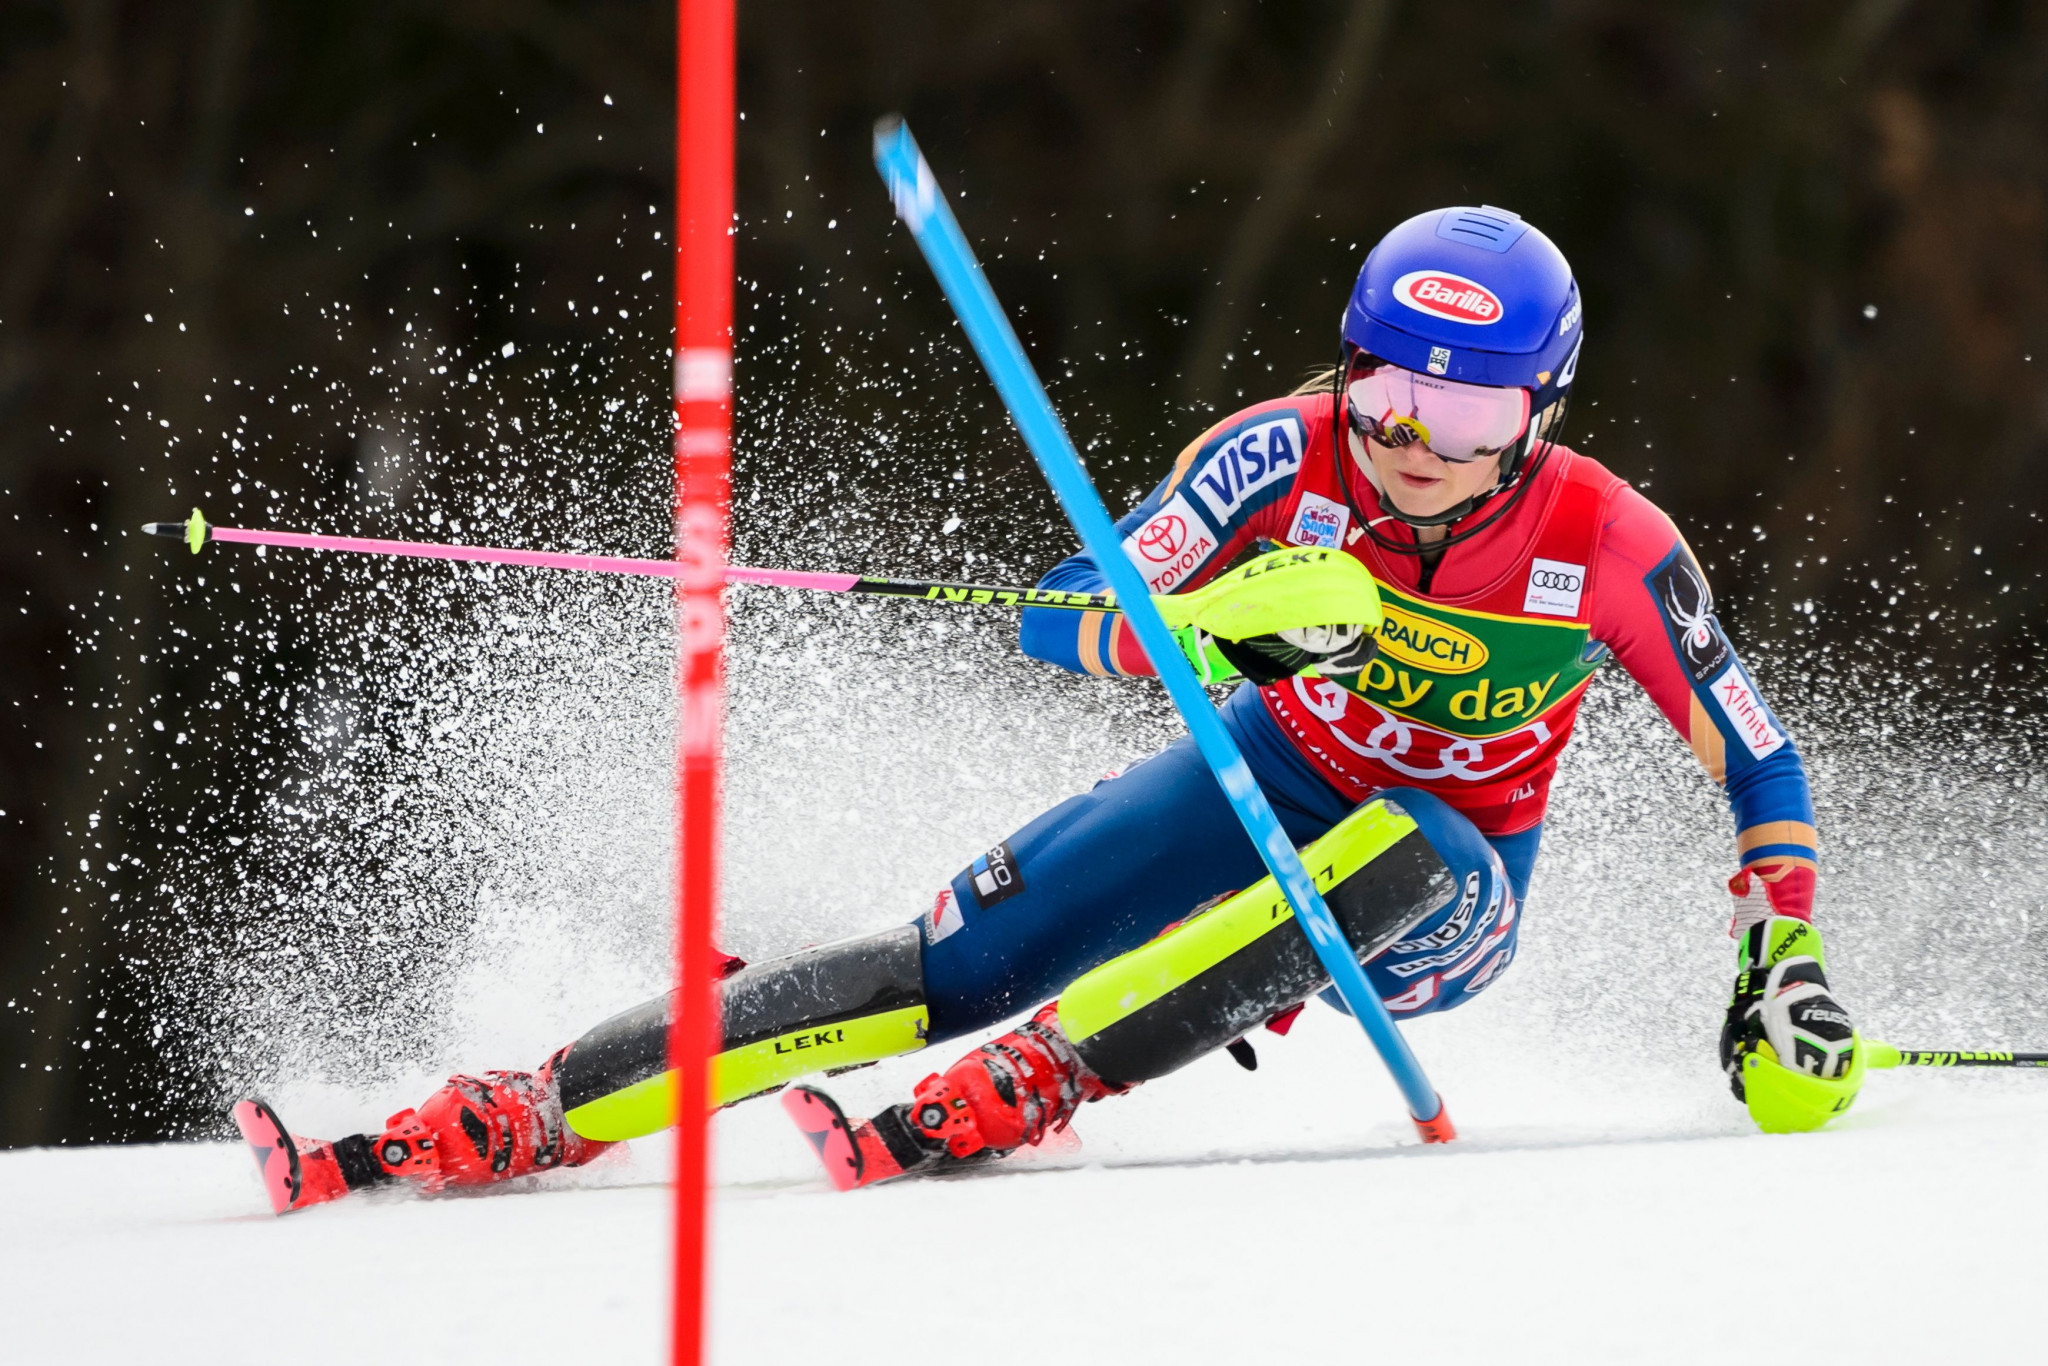 Shiffrin obliterates slalom rivals with 40th FIS Alpine World Cup win